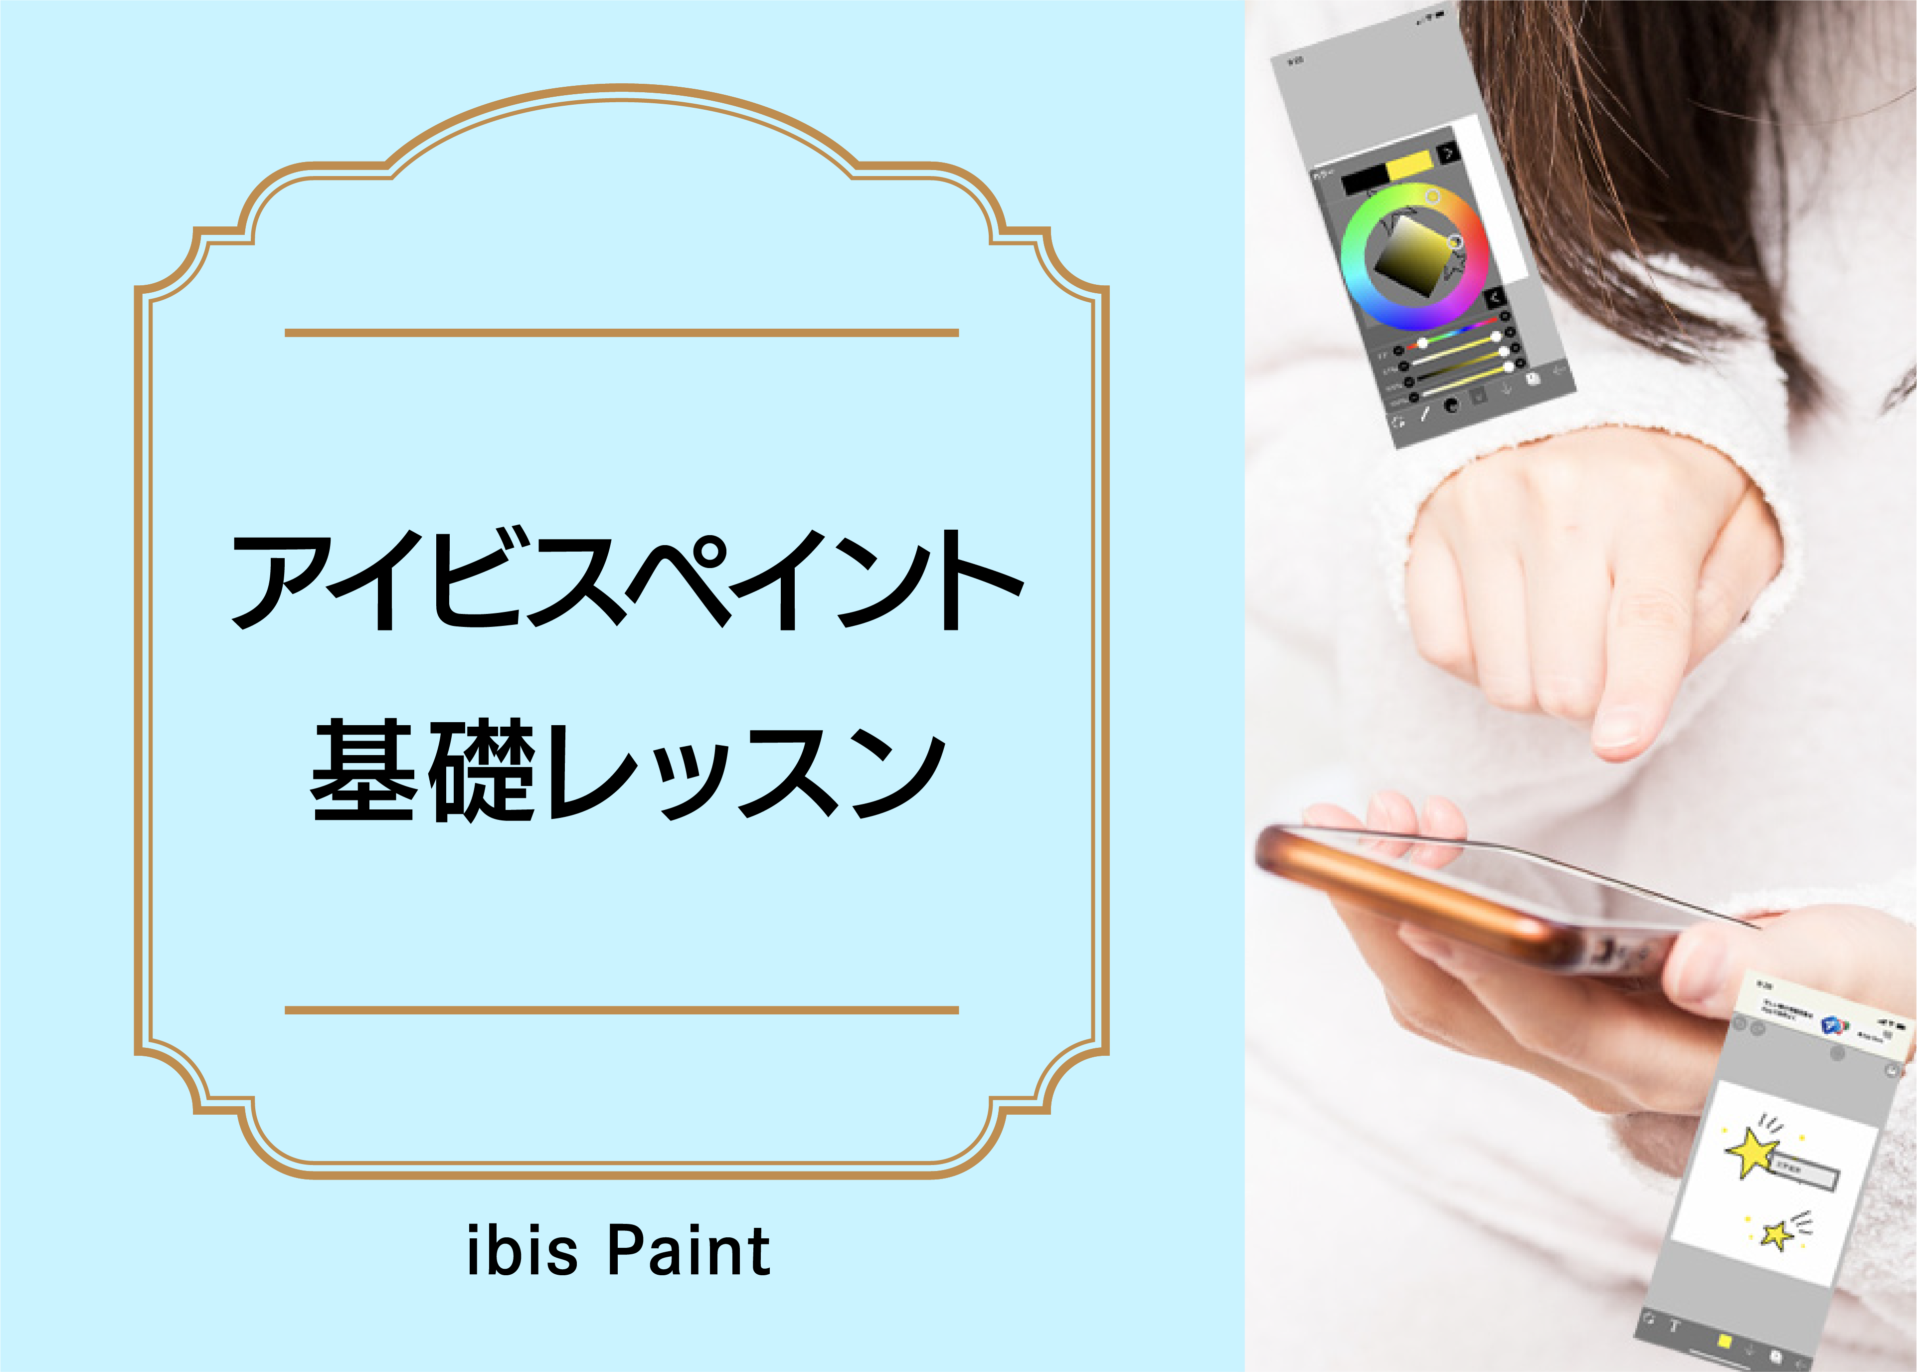 アイビスペイント基礎レッスン【ibis Paint】